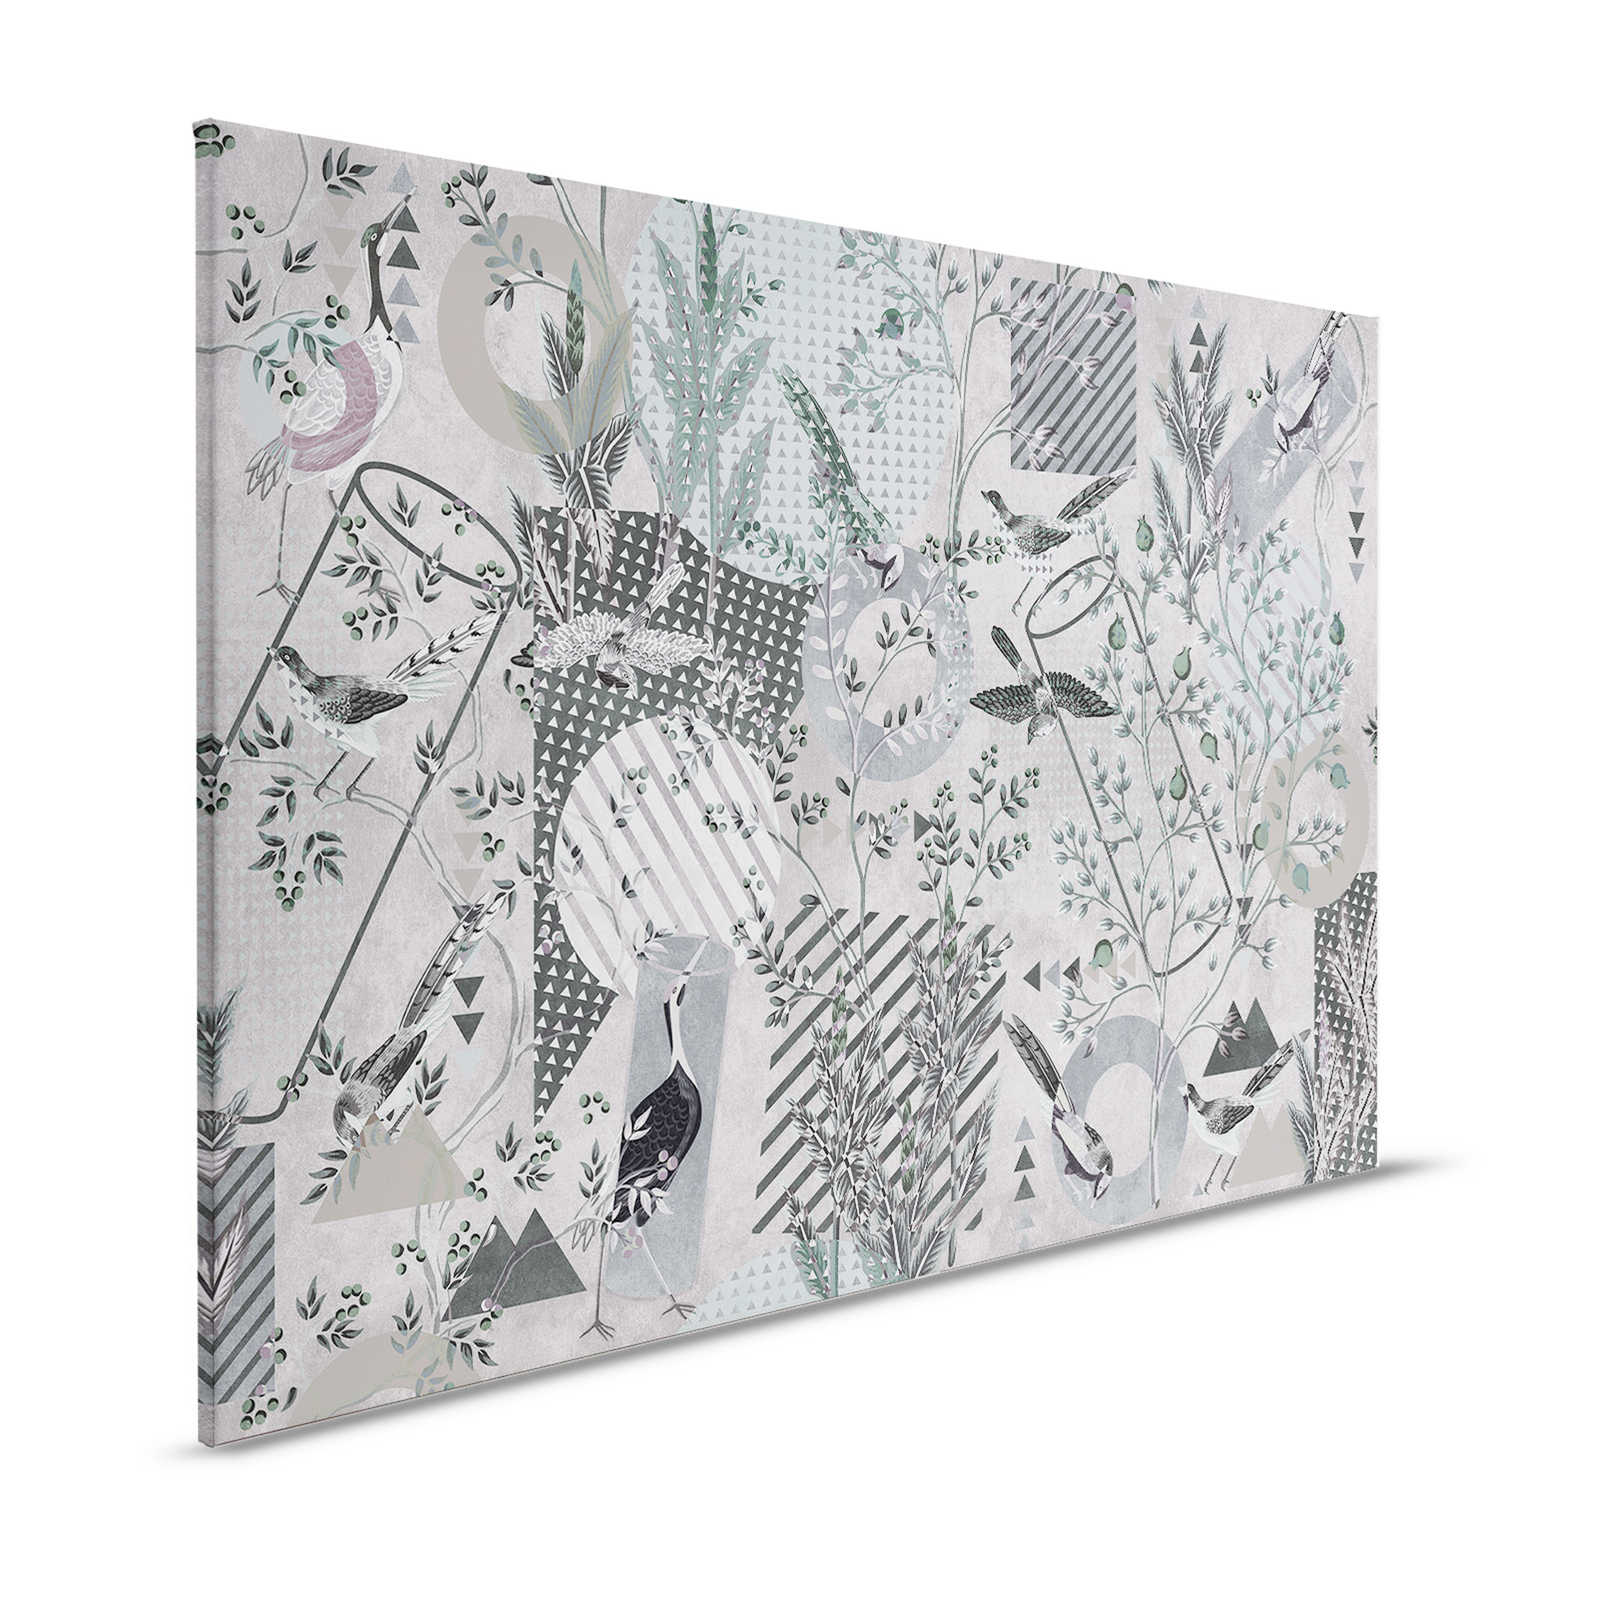 Birds Playgroude 1 - Toile Collage gris oiseaux & motifs - 1,20 m x 0,80 m
